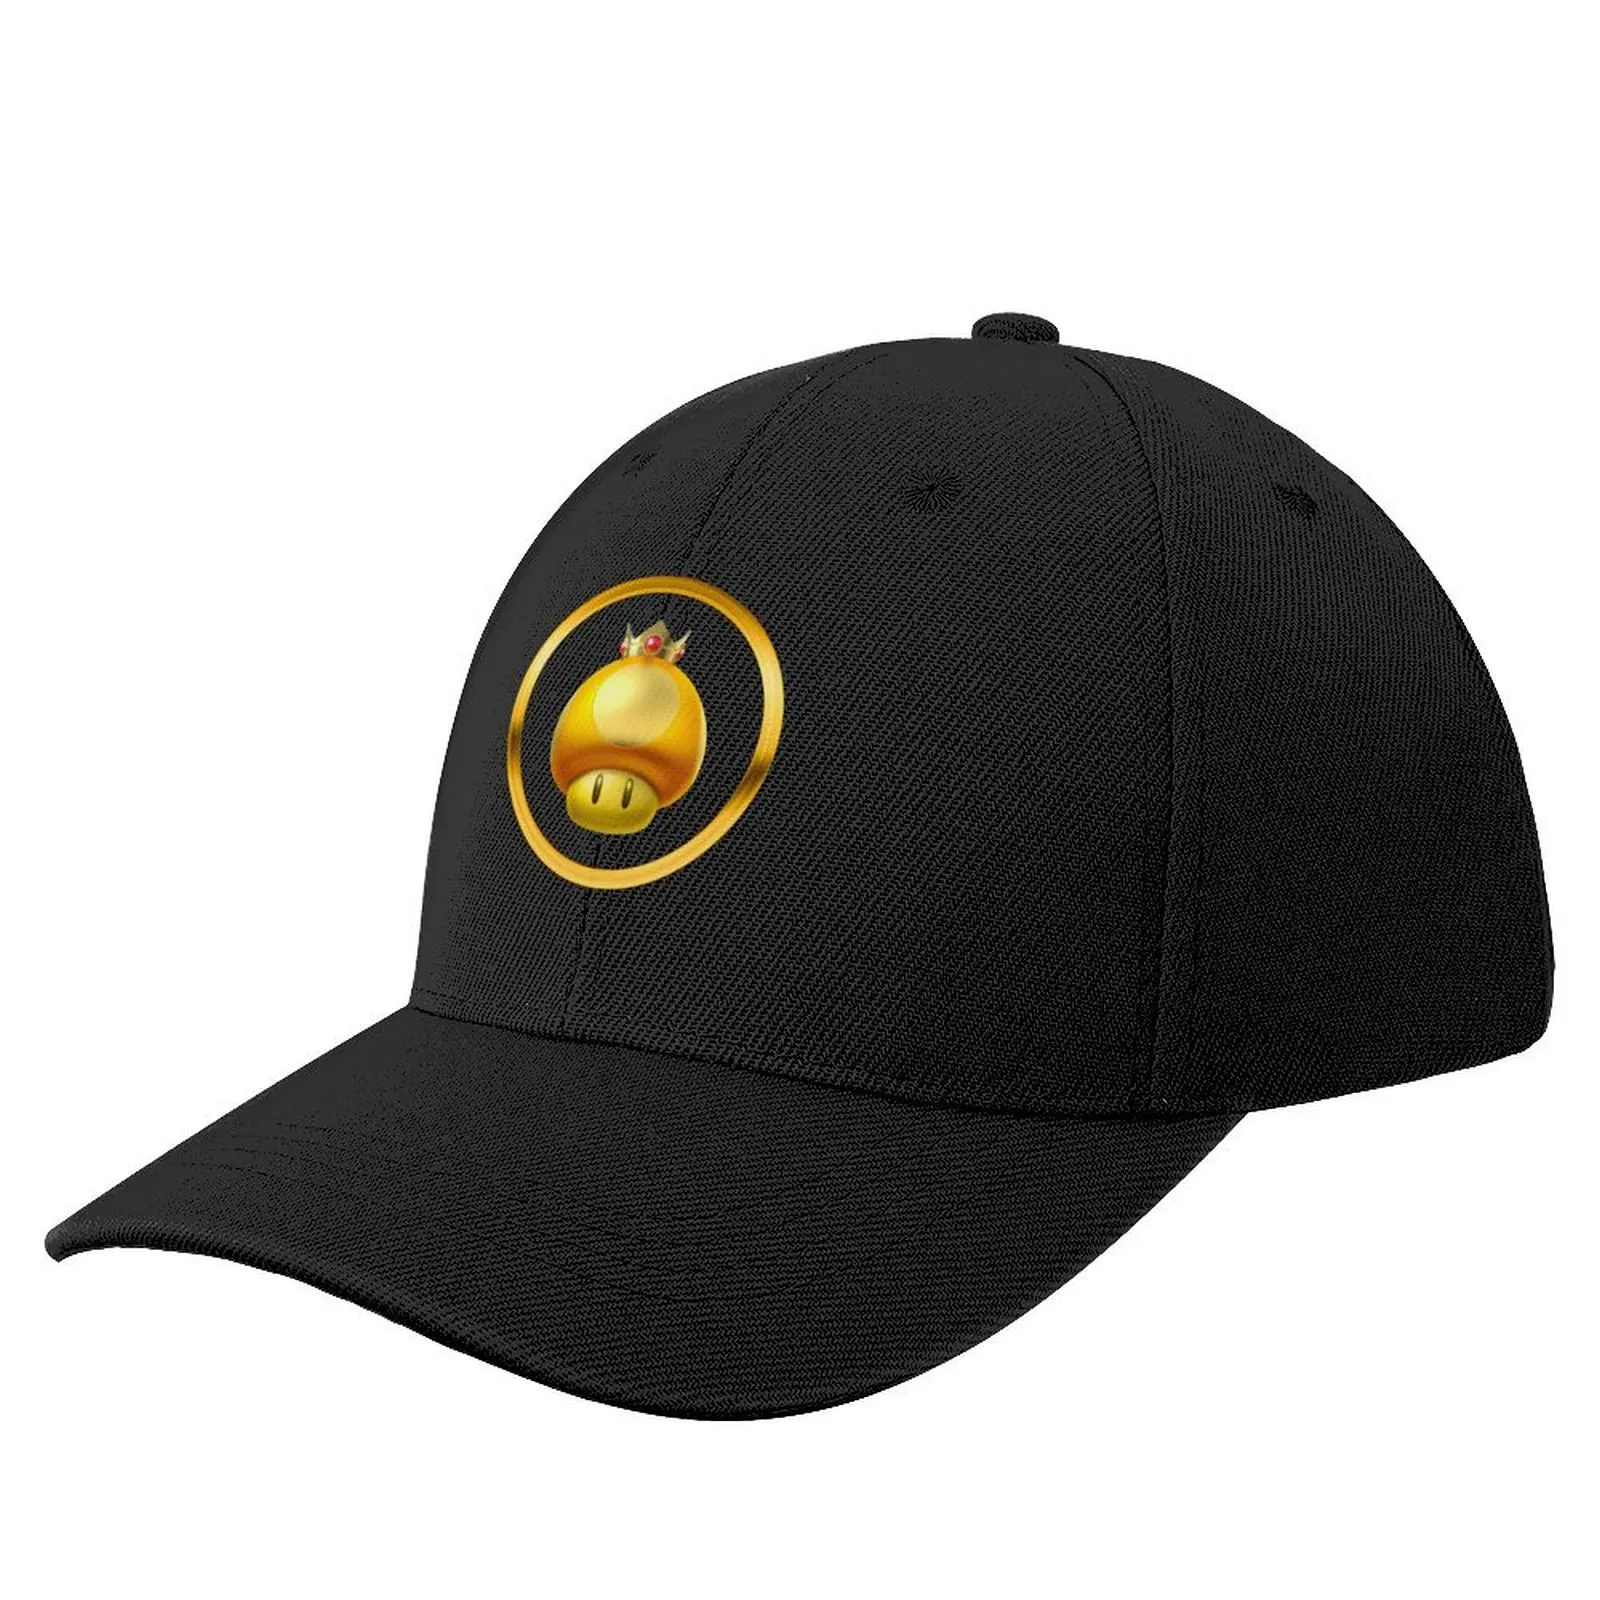 

Супер золотой гриб! (On Black) бейсболка для альпинизма косплея Женская одежда для гольфа мужская